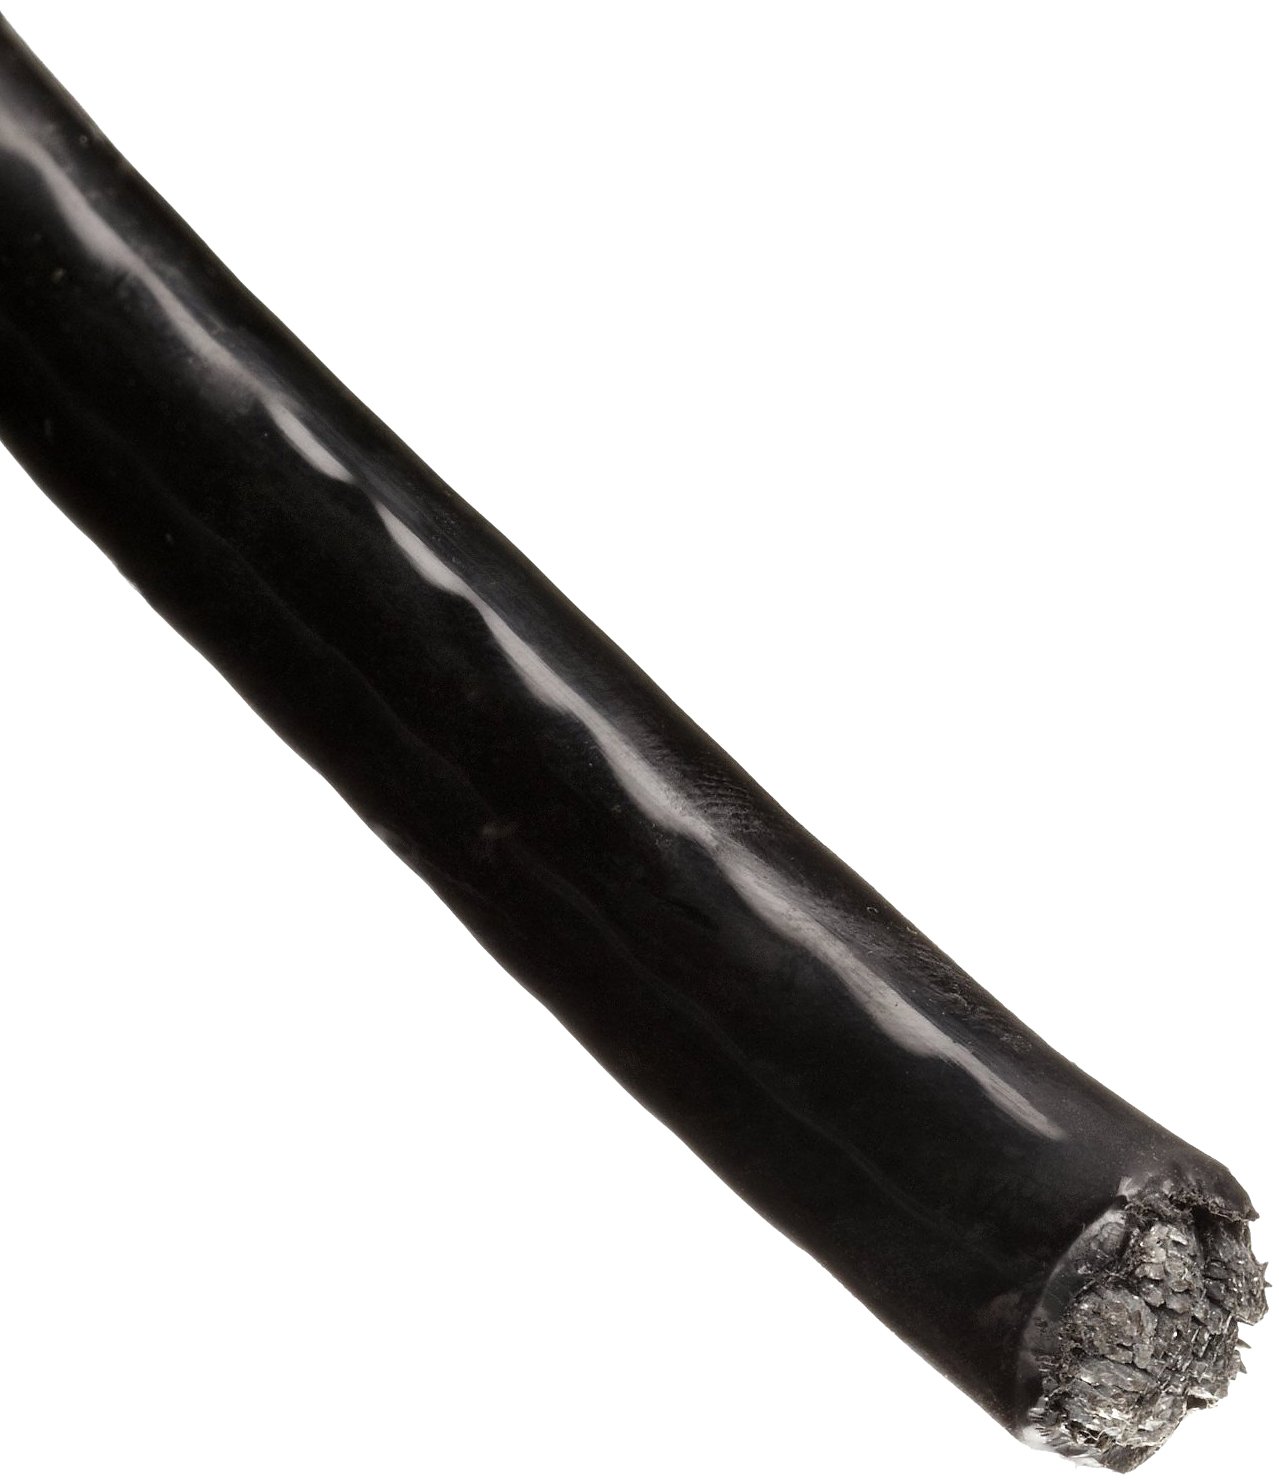 Трос в ПВХ оболочке 4 мм непрозрачный черный - фото